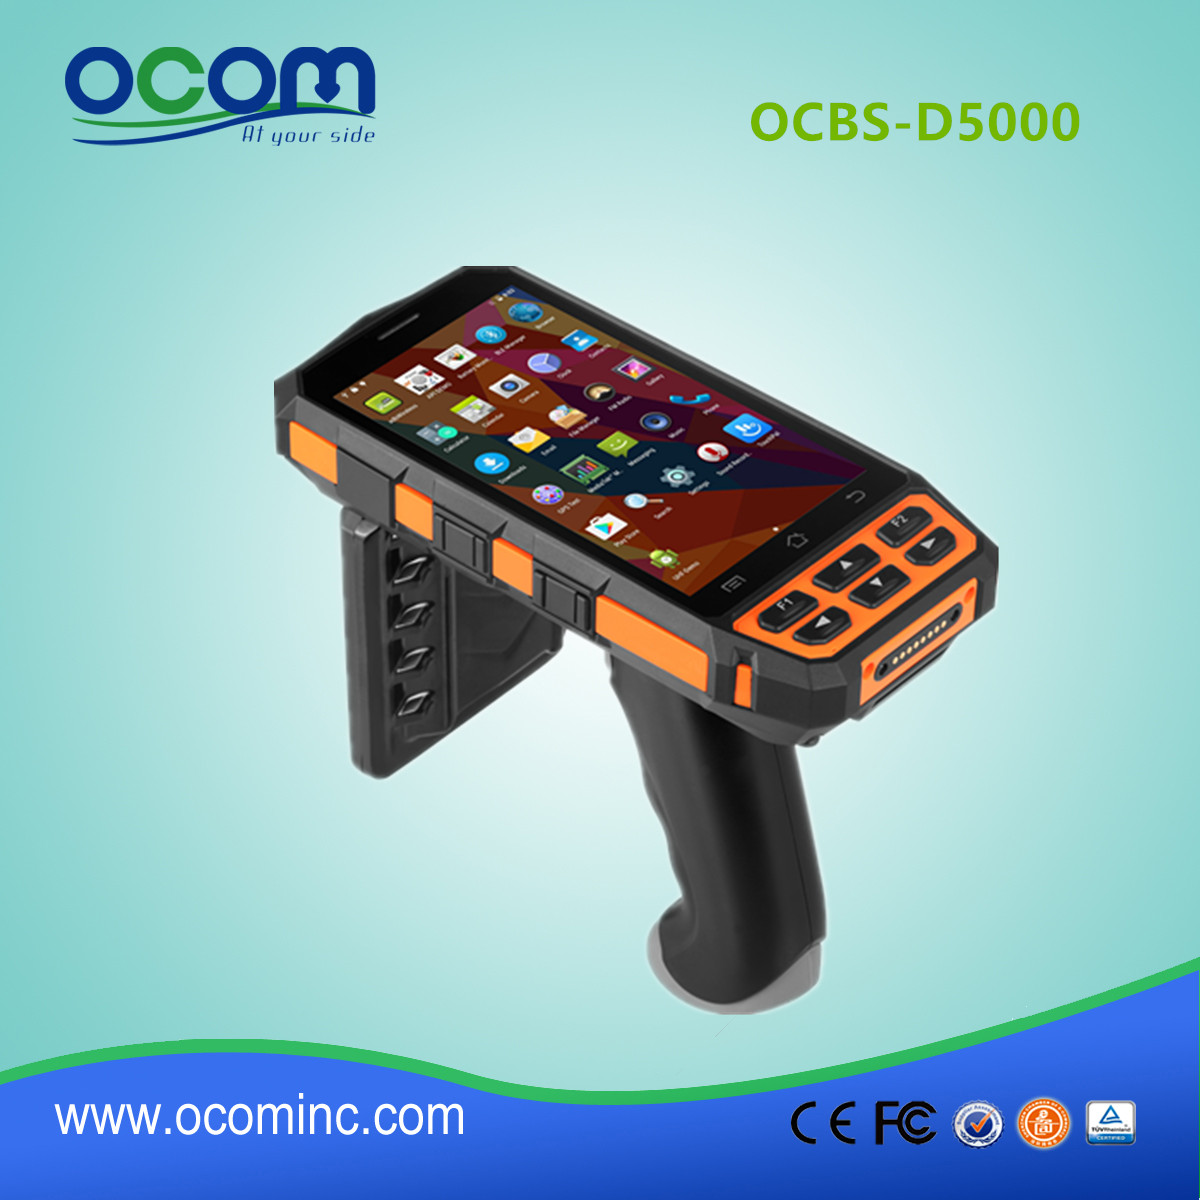 Nouveau terminal portatif industriel Android modèle OCBS-D5000